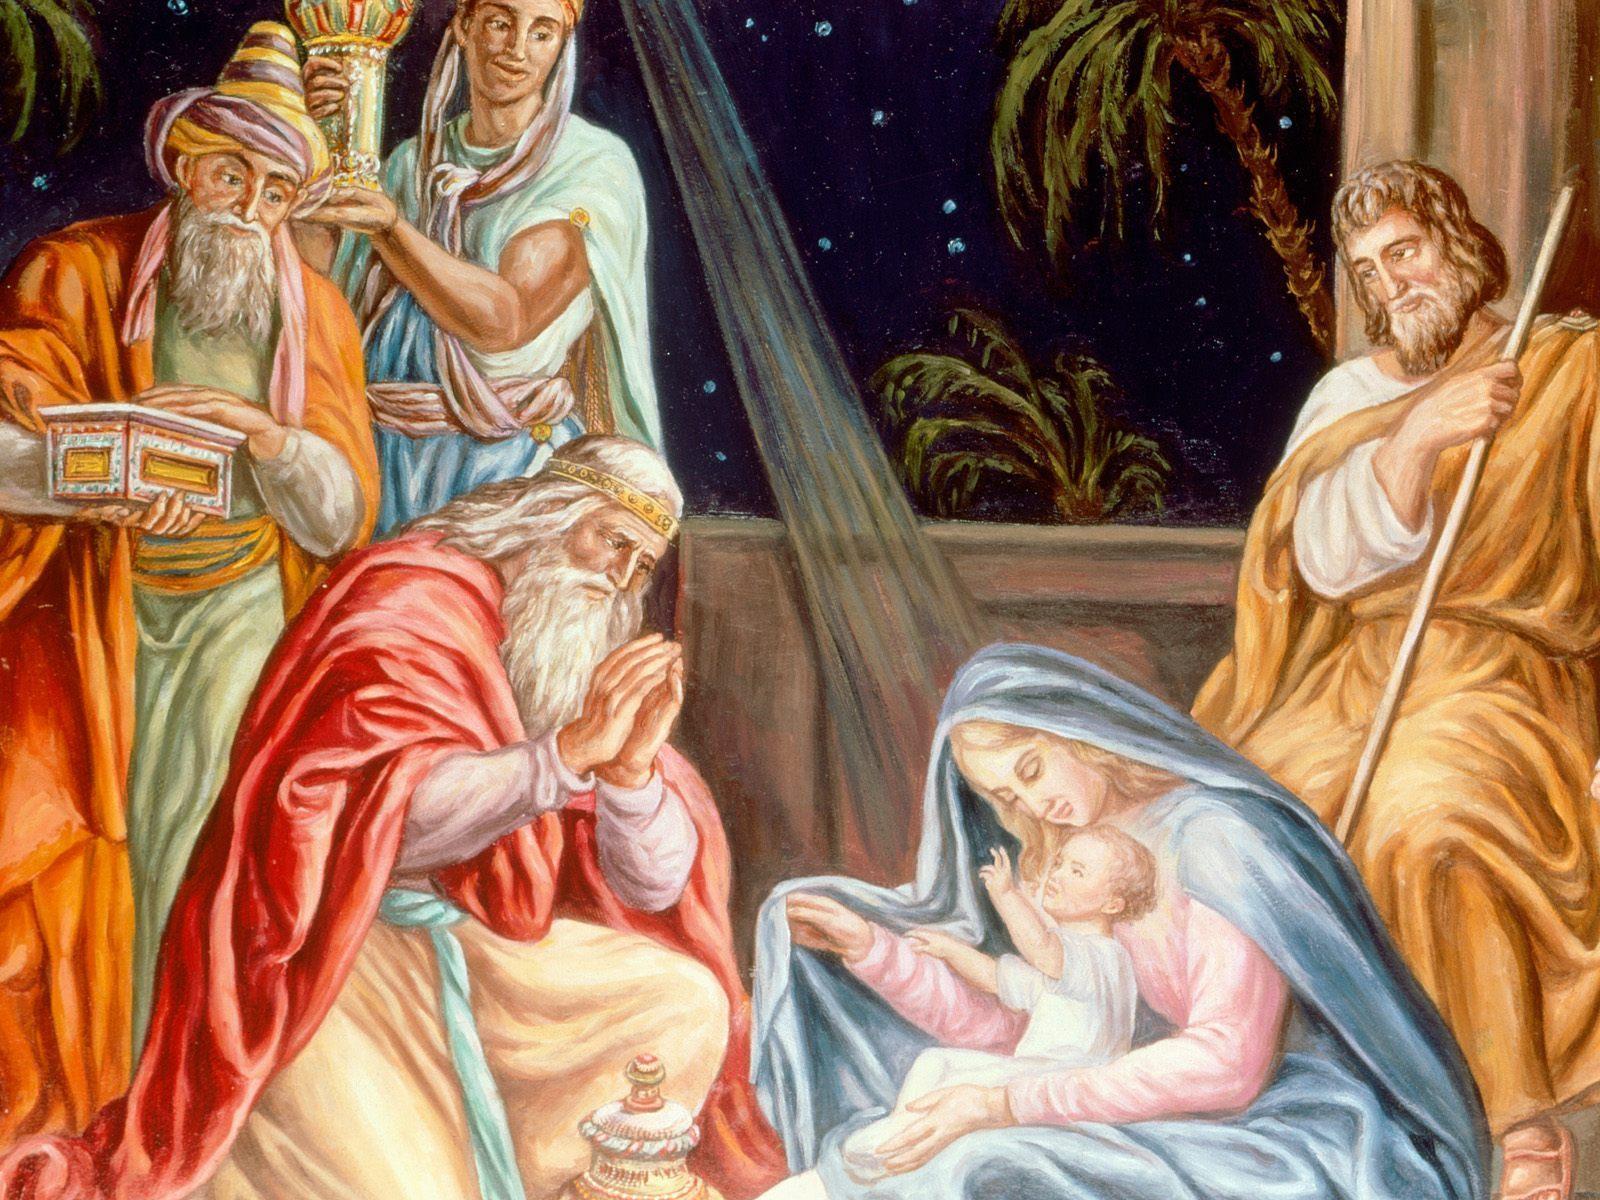 Christ Is Born Wallpaper. Christ Is Born Wallpaper, Reborn Wallpaper and Newborn Babies Wallpaper